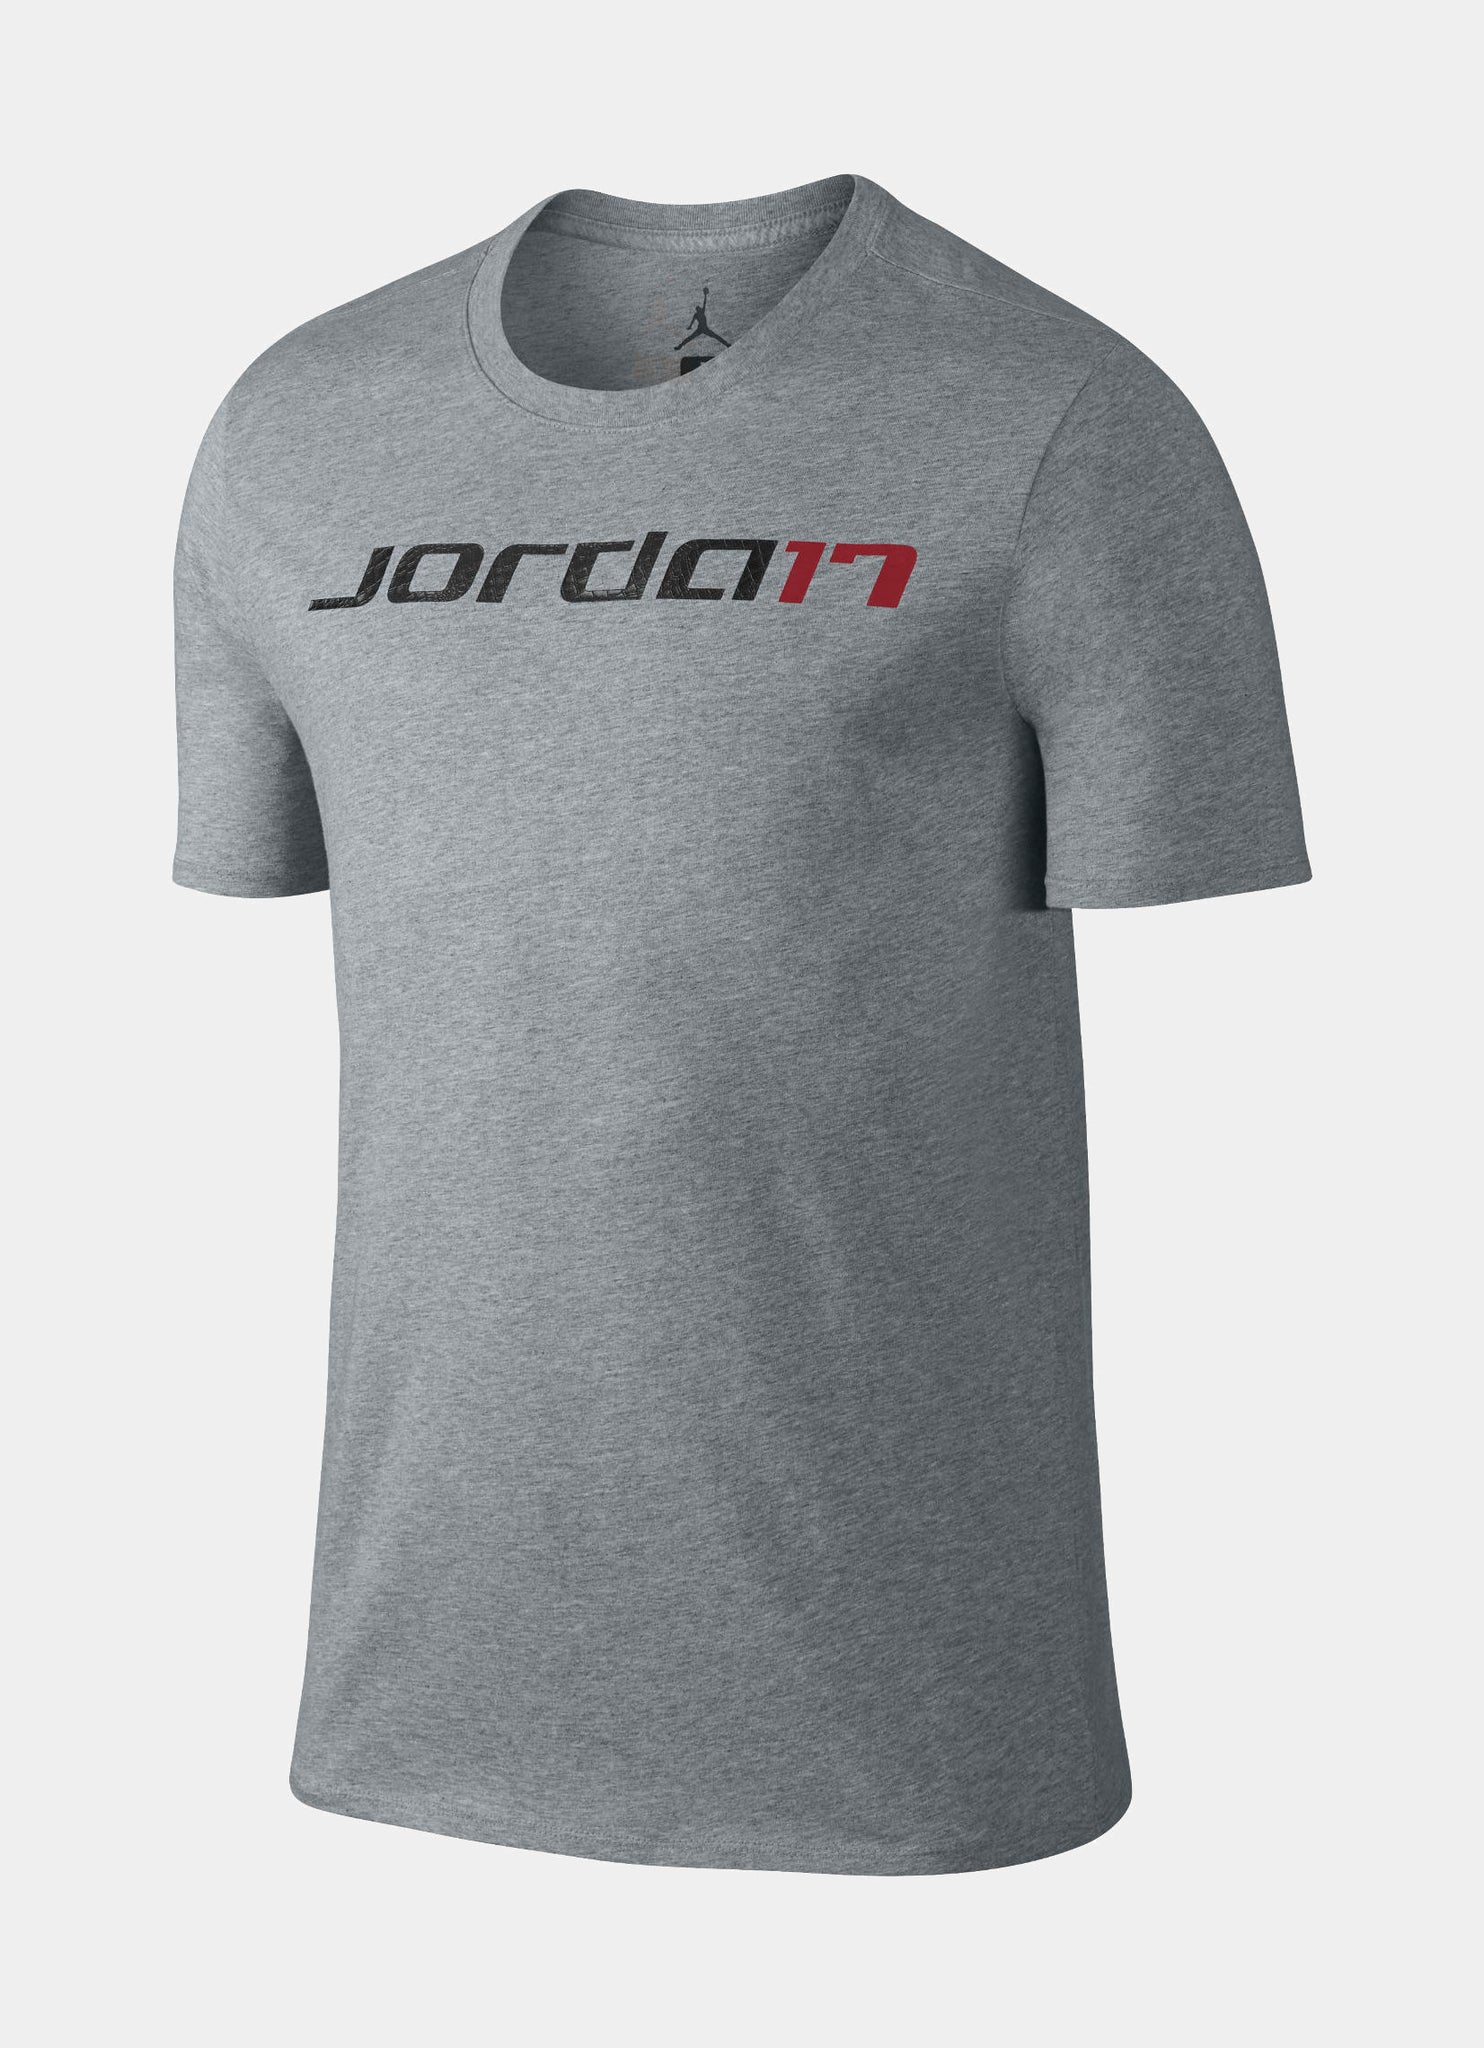 Jordan Men's T-Shirt - Red - L